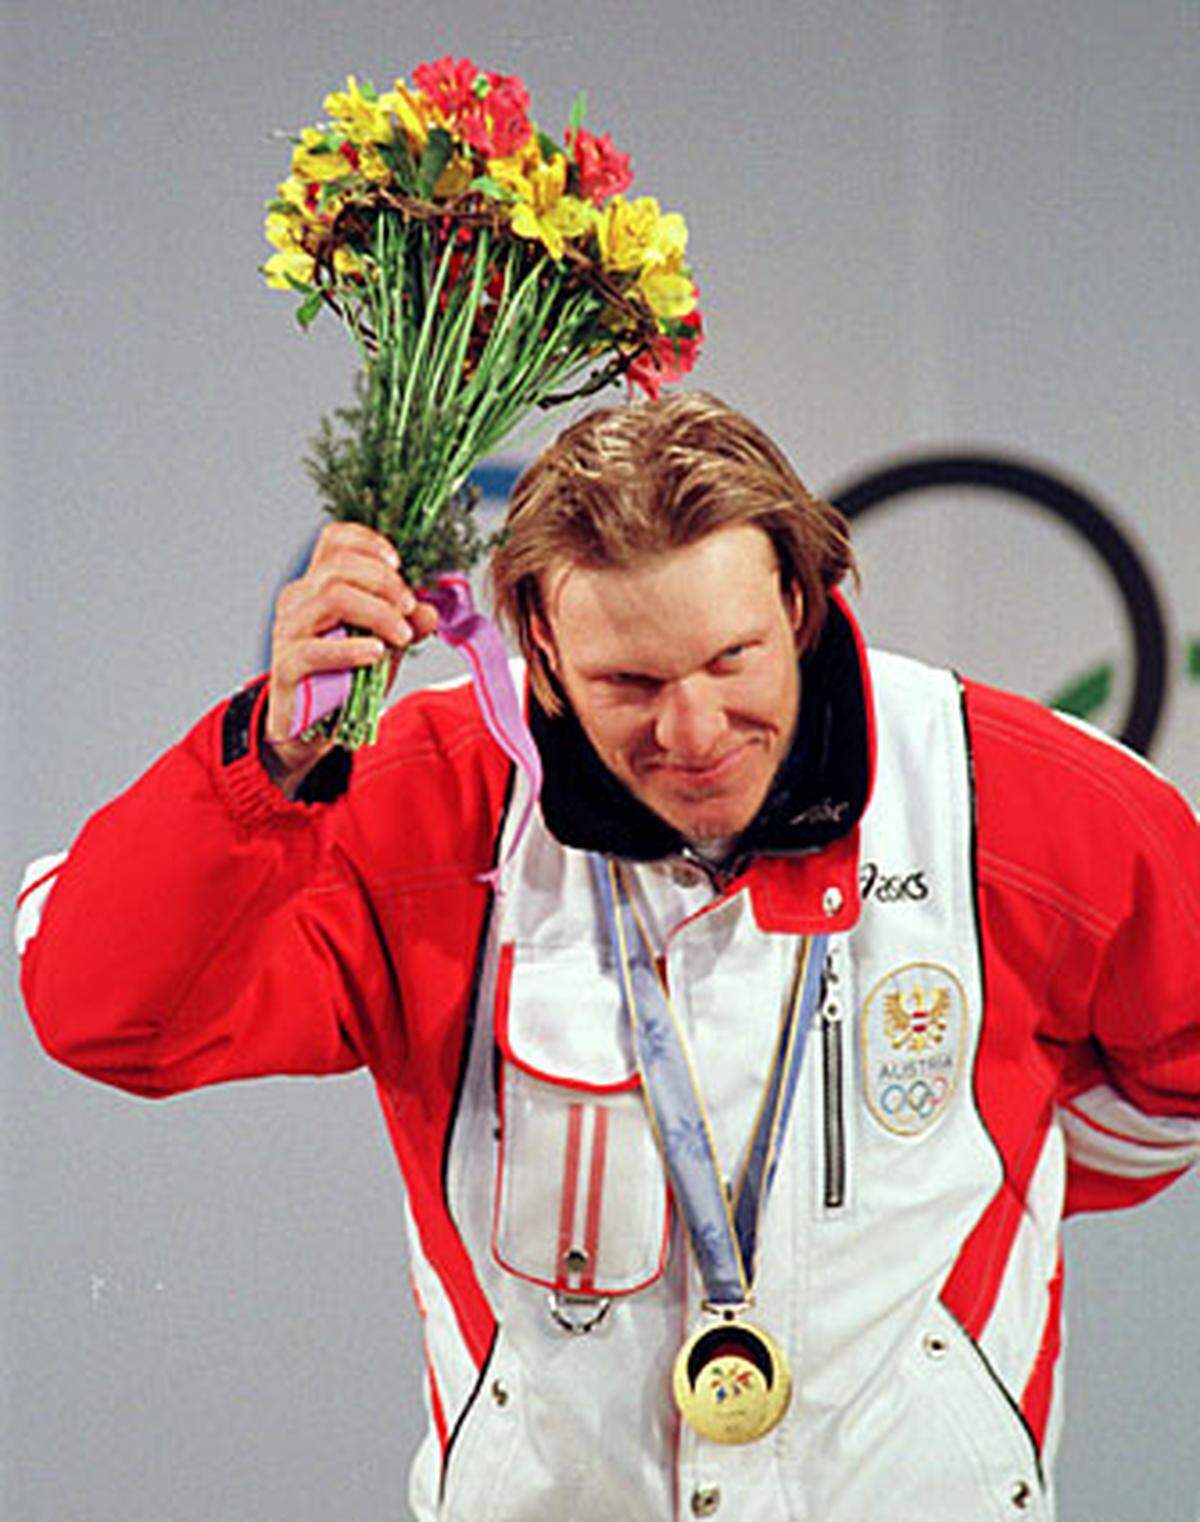 Nur drei Tage später holt Maier sensationell die Goldmedaille im Super-G. Die Skiwelt ist tief beeindruckt.